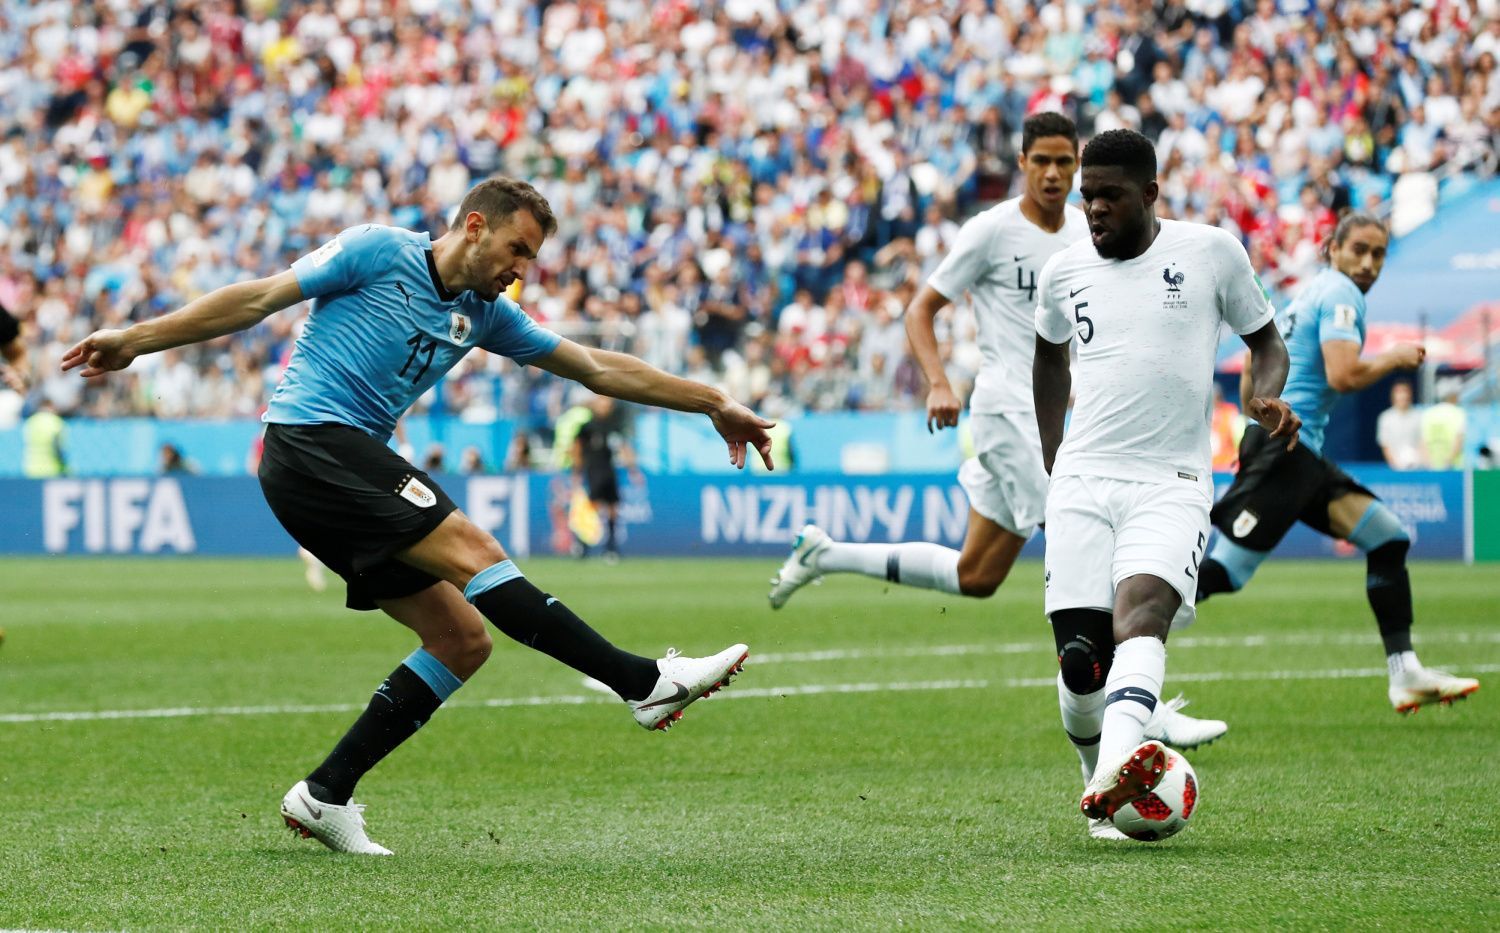 Christian Stuani a Samuel Umtiti v zápase Uruguay -- Francie na MS 2018